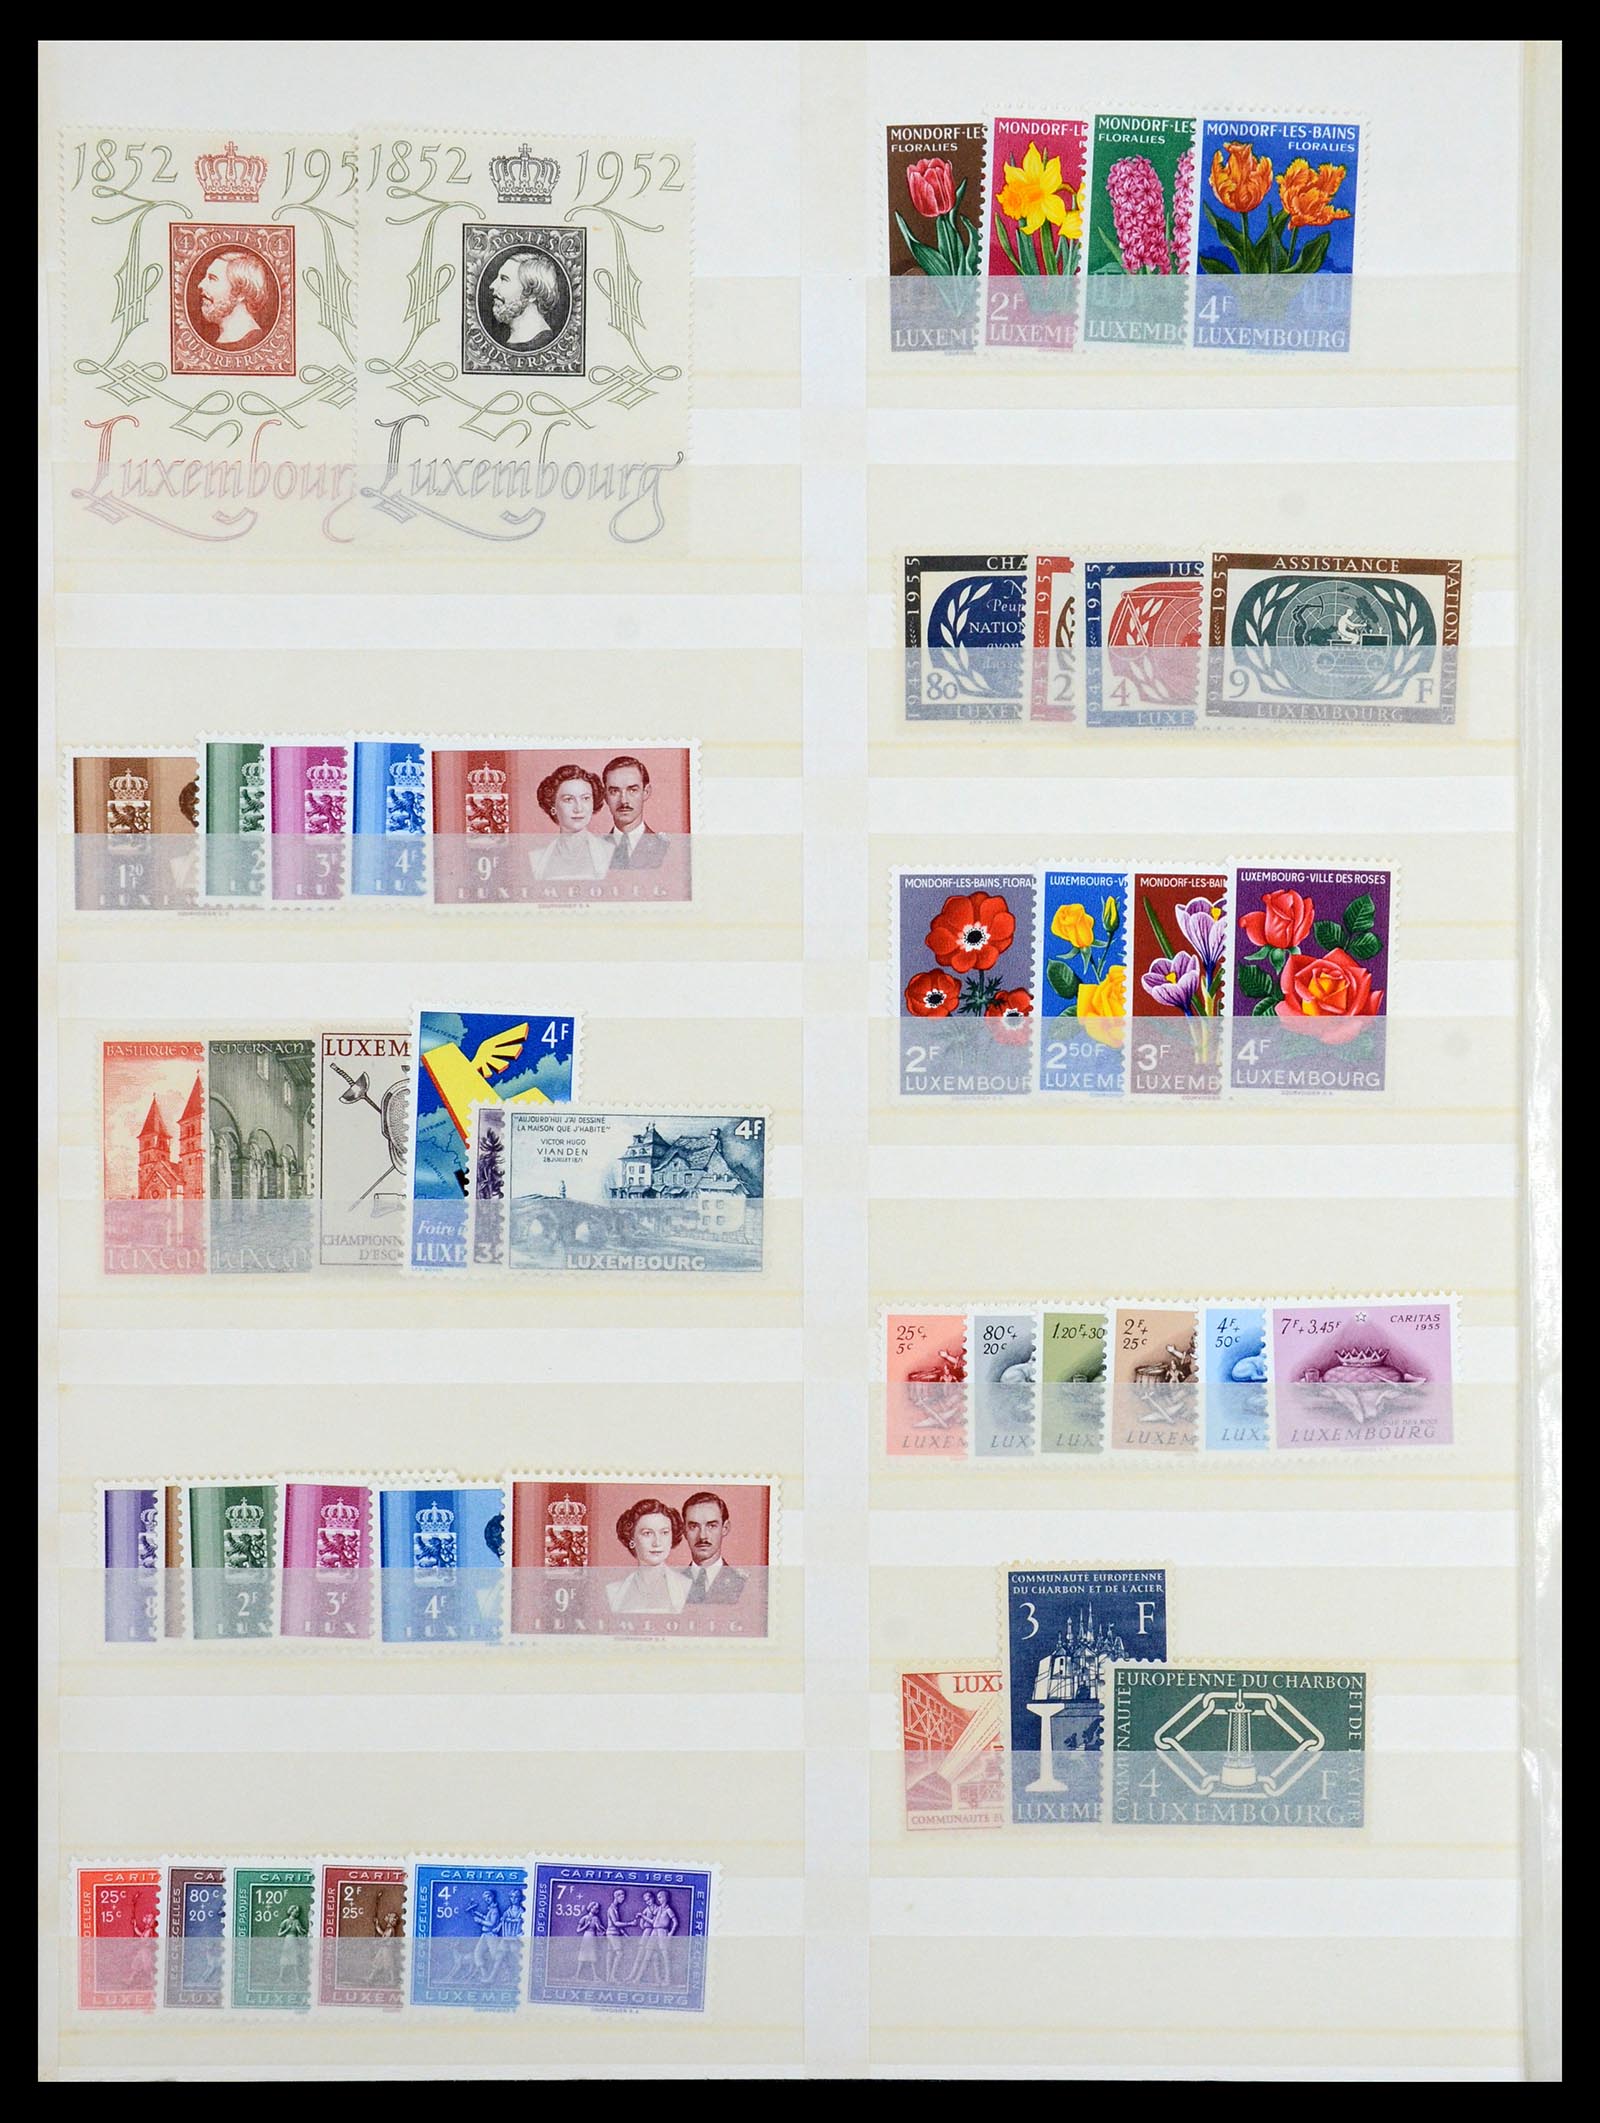 35165 010 - Postzegelverzameling 35165 Zwitserland en Luxemburg toppers.